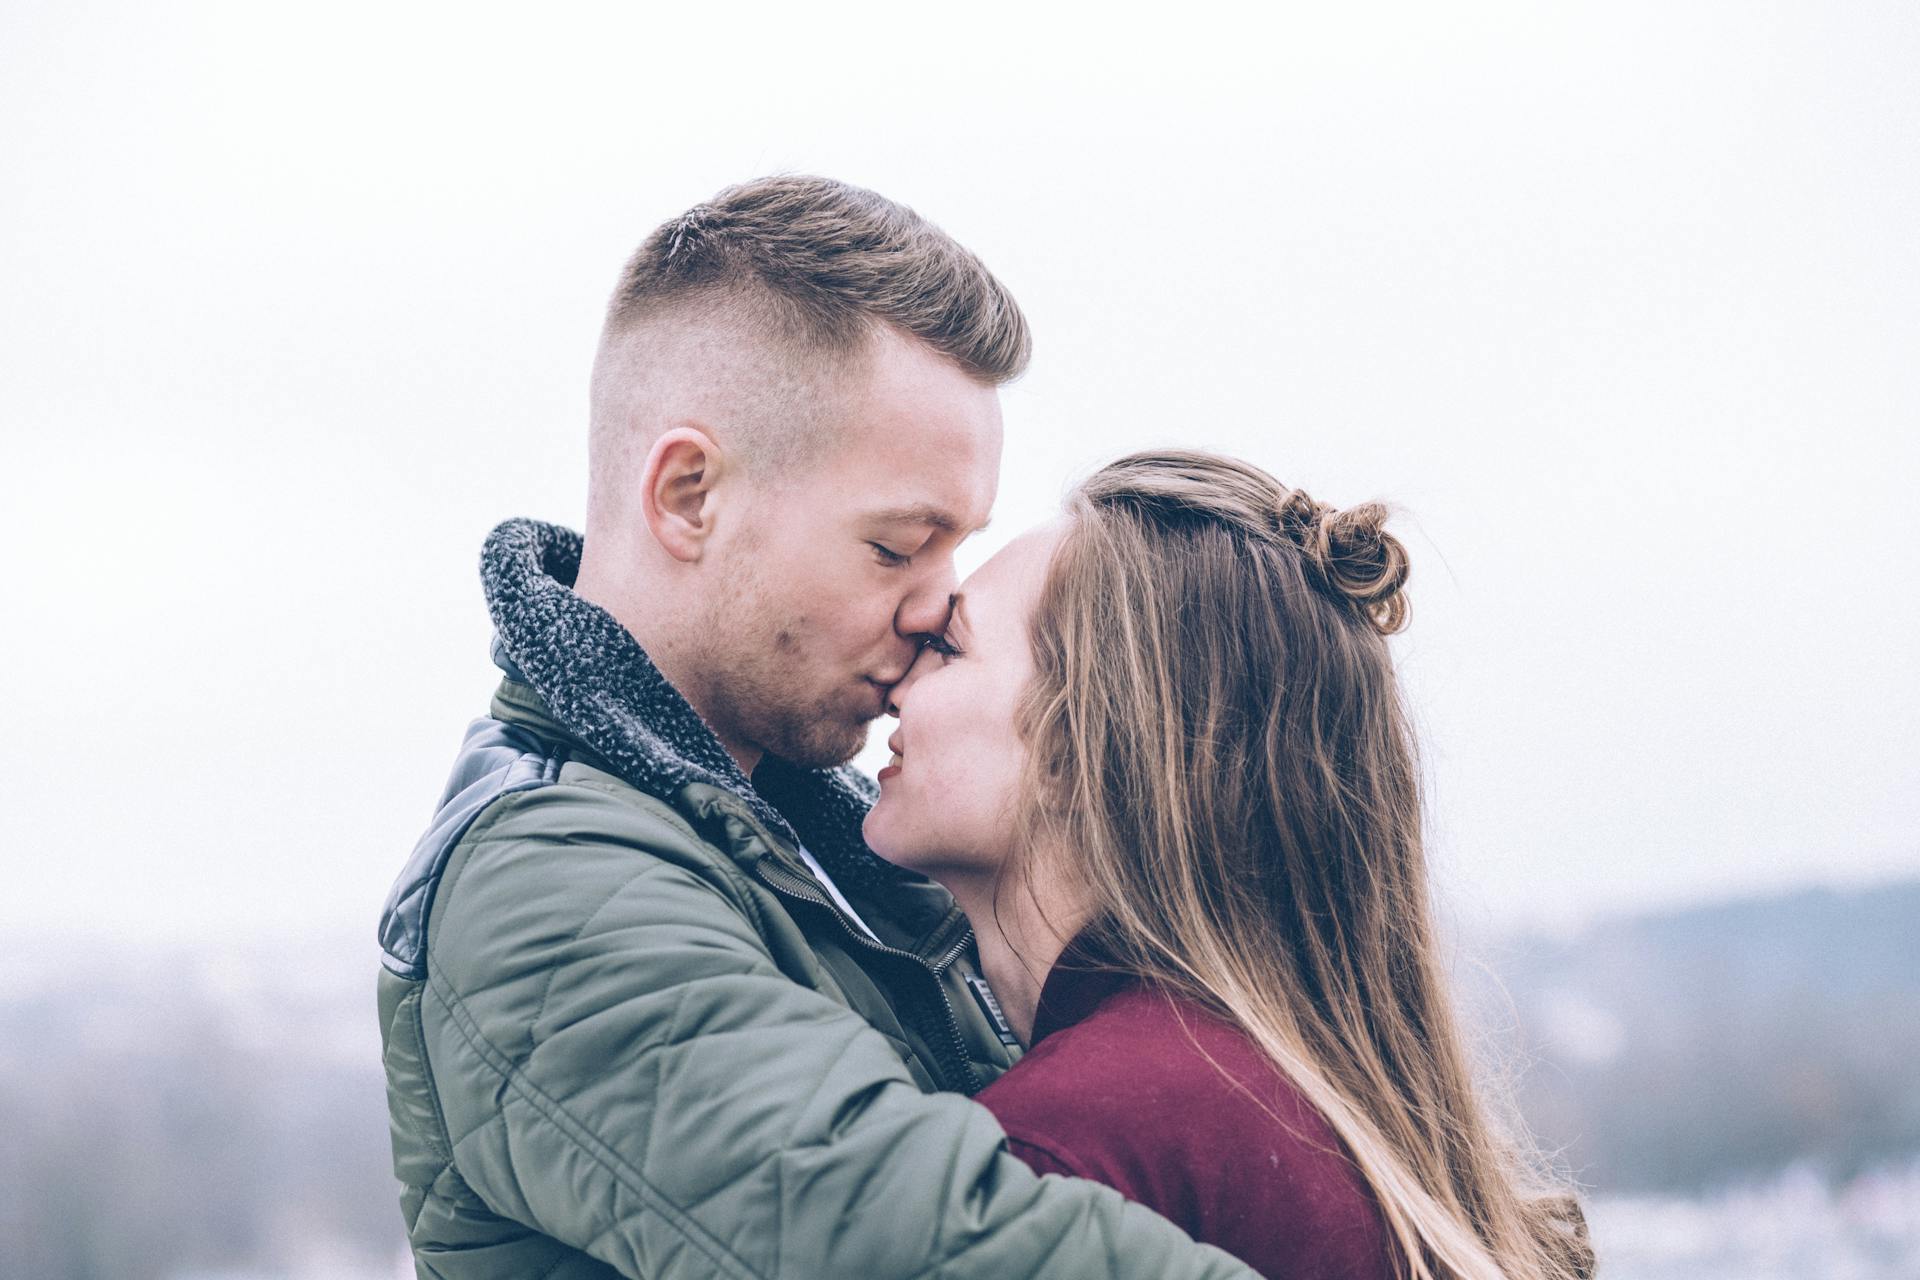 Un homme embrassant sa petite amie sur le nez | Source : Pexels